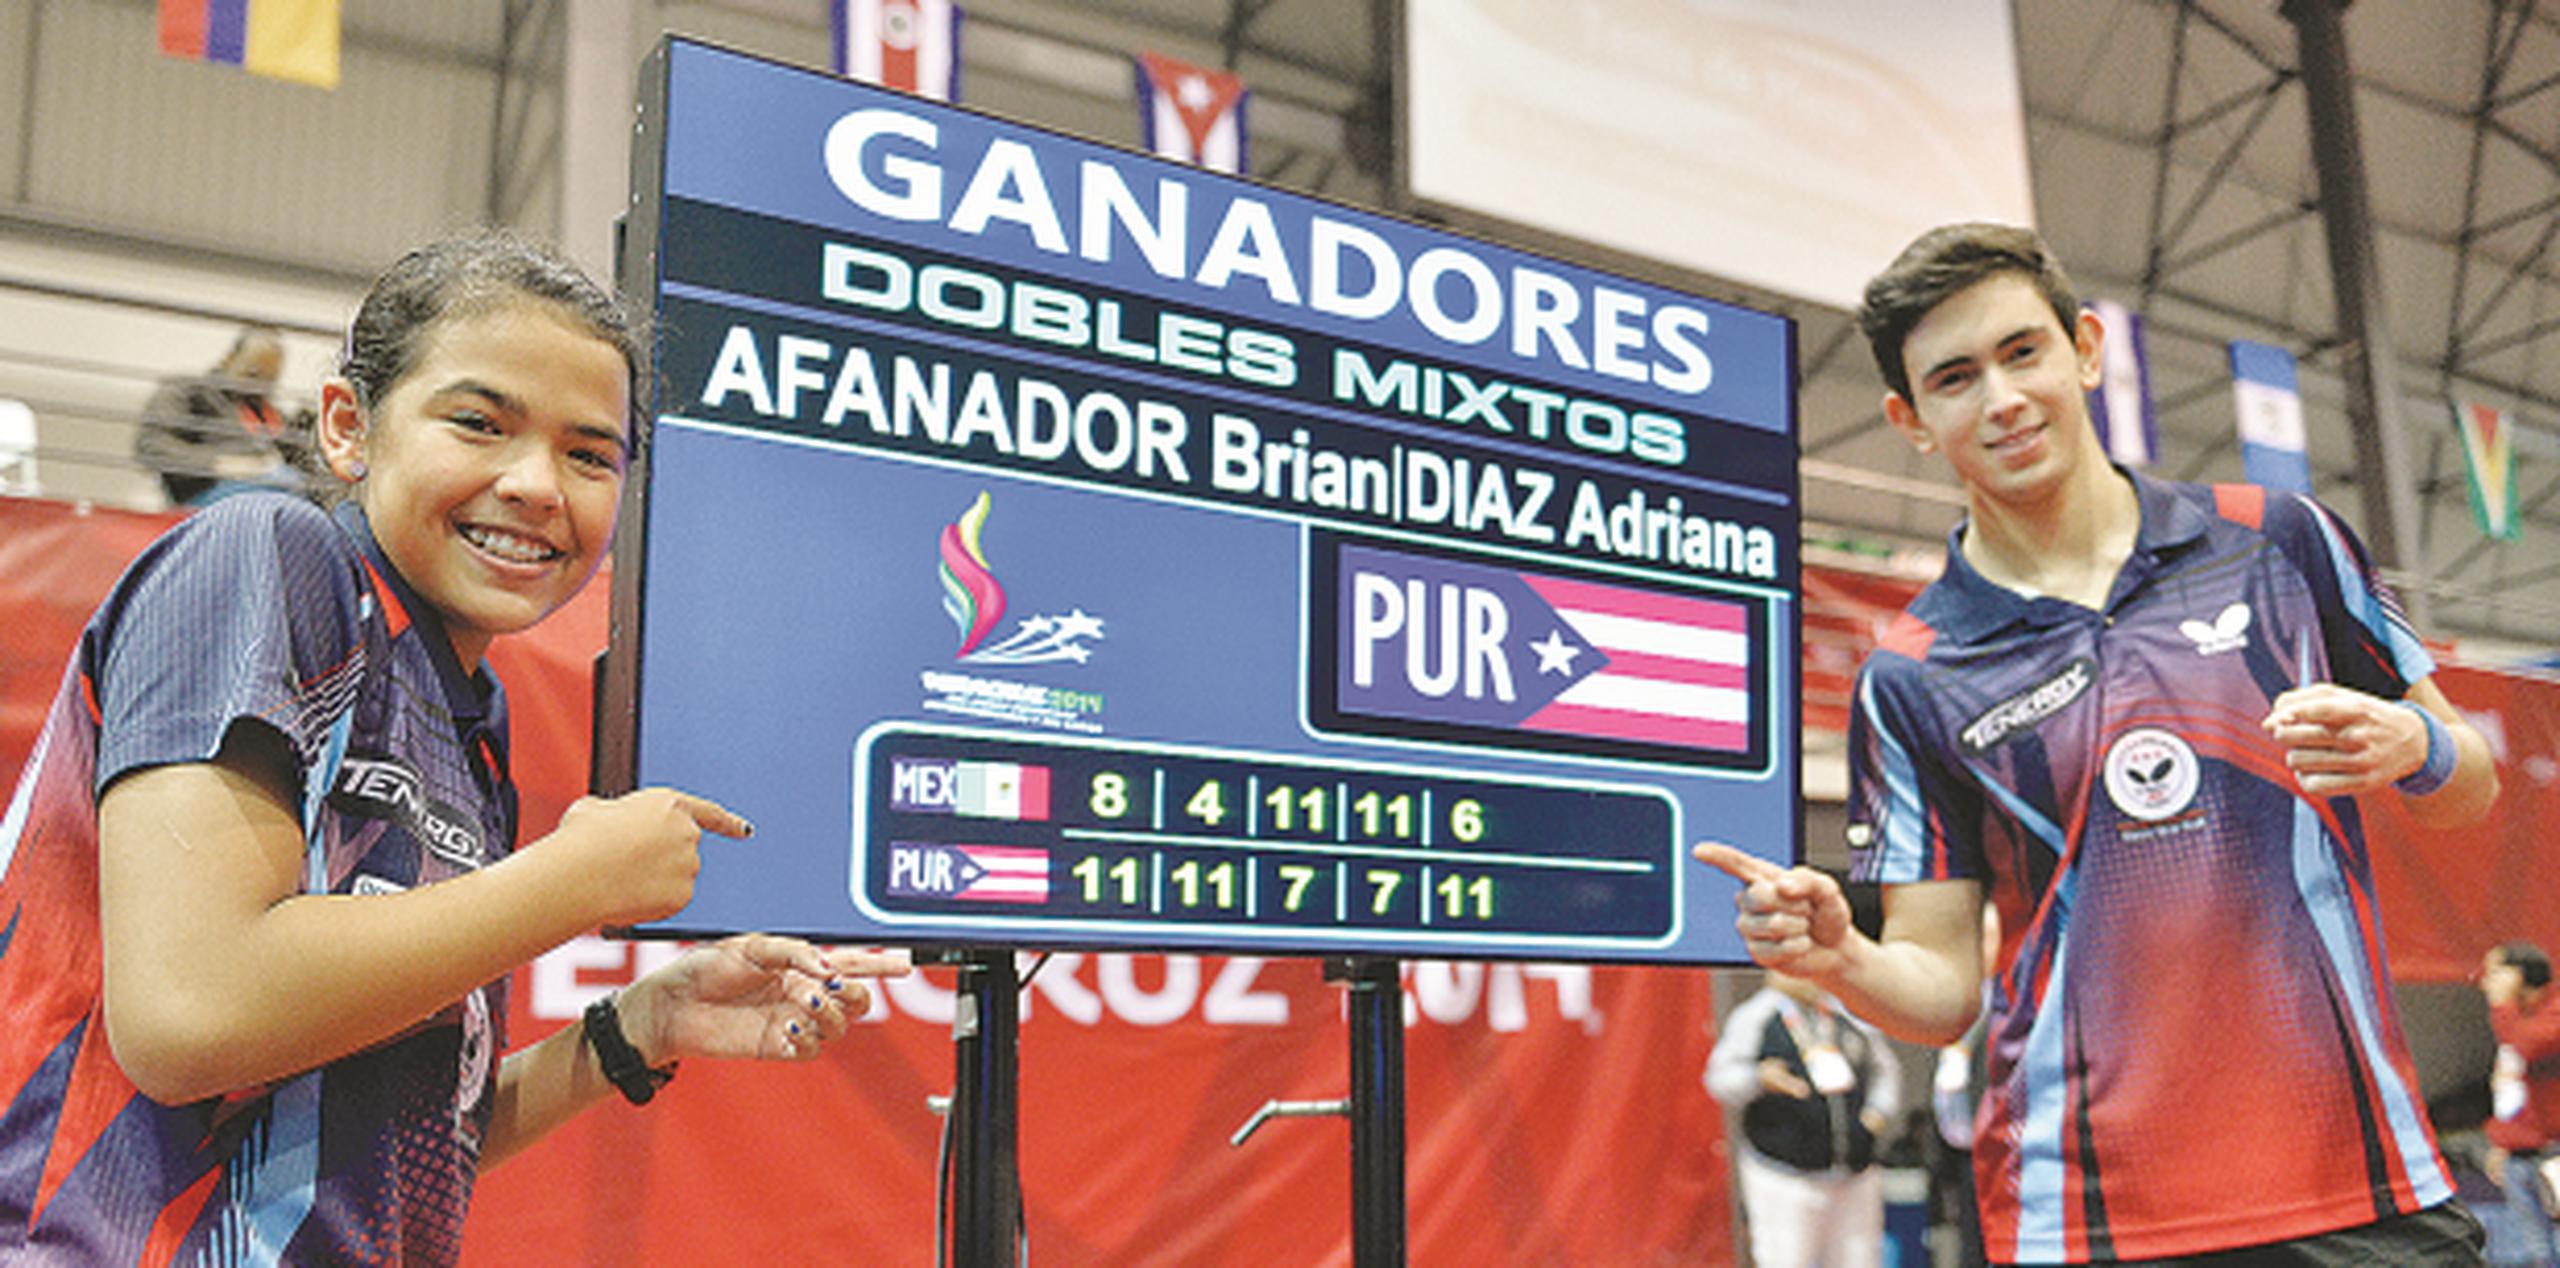 El tenis de mesa, liderados por Adriana Díaz y Brian Afanador, fue el deporte bandera de Puerto Rico en los Juegos Centroamericanosy del Caribe en Veracruz. (Archivo / gerald.lopez@gfrmedia.com)
